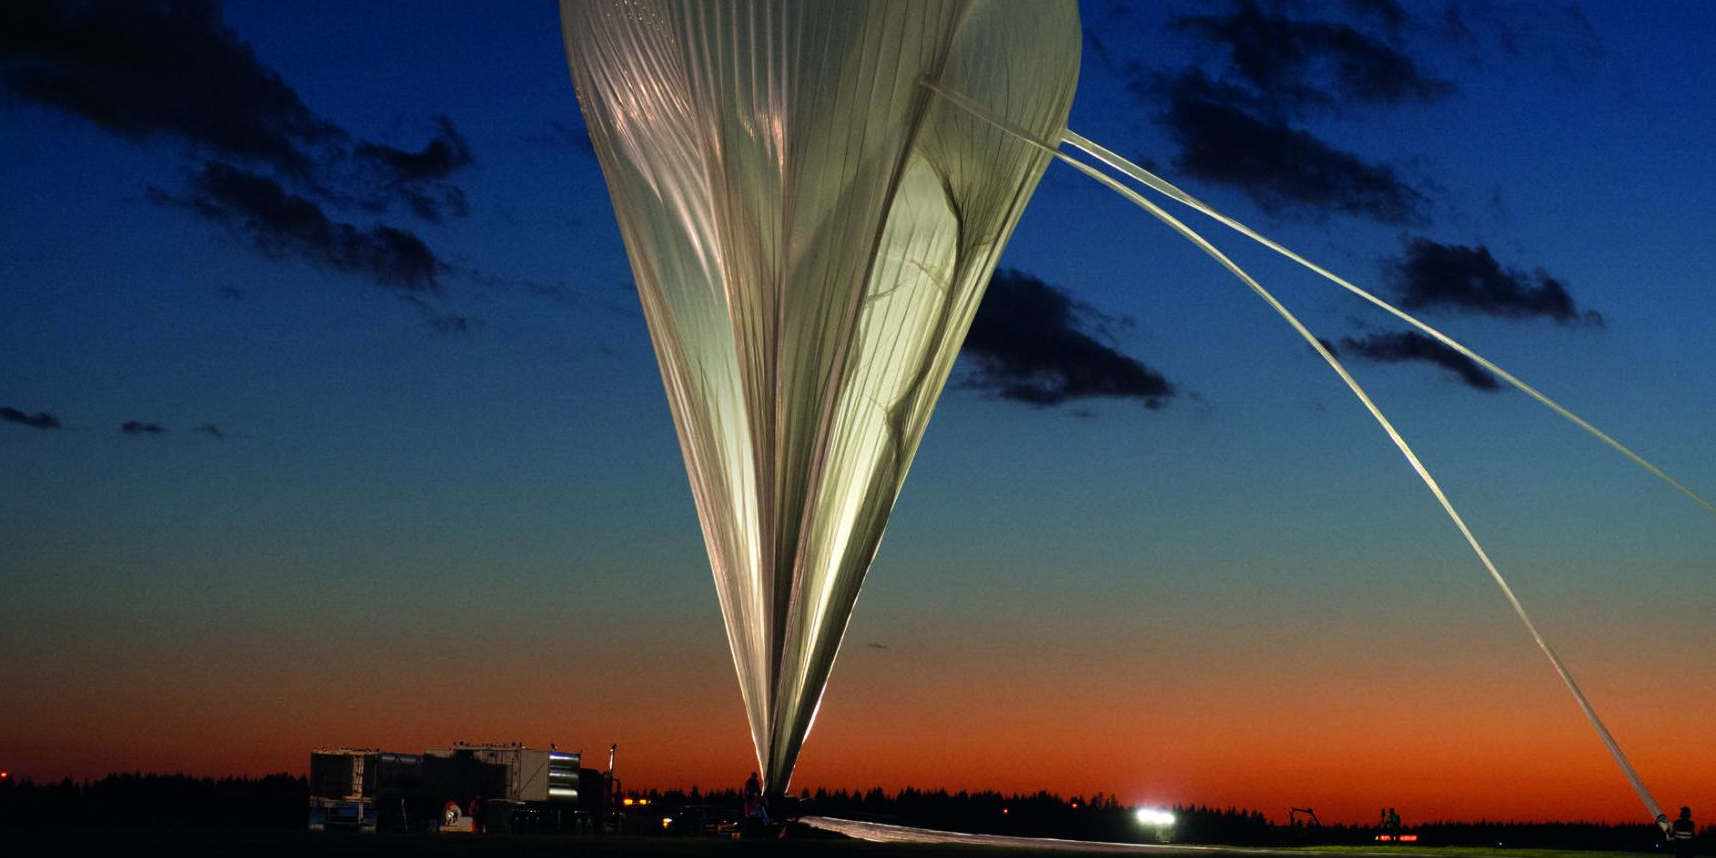 Hemeria compte mettre en service le ballon stratosphérique BalMan en 2026